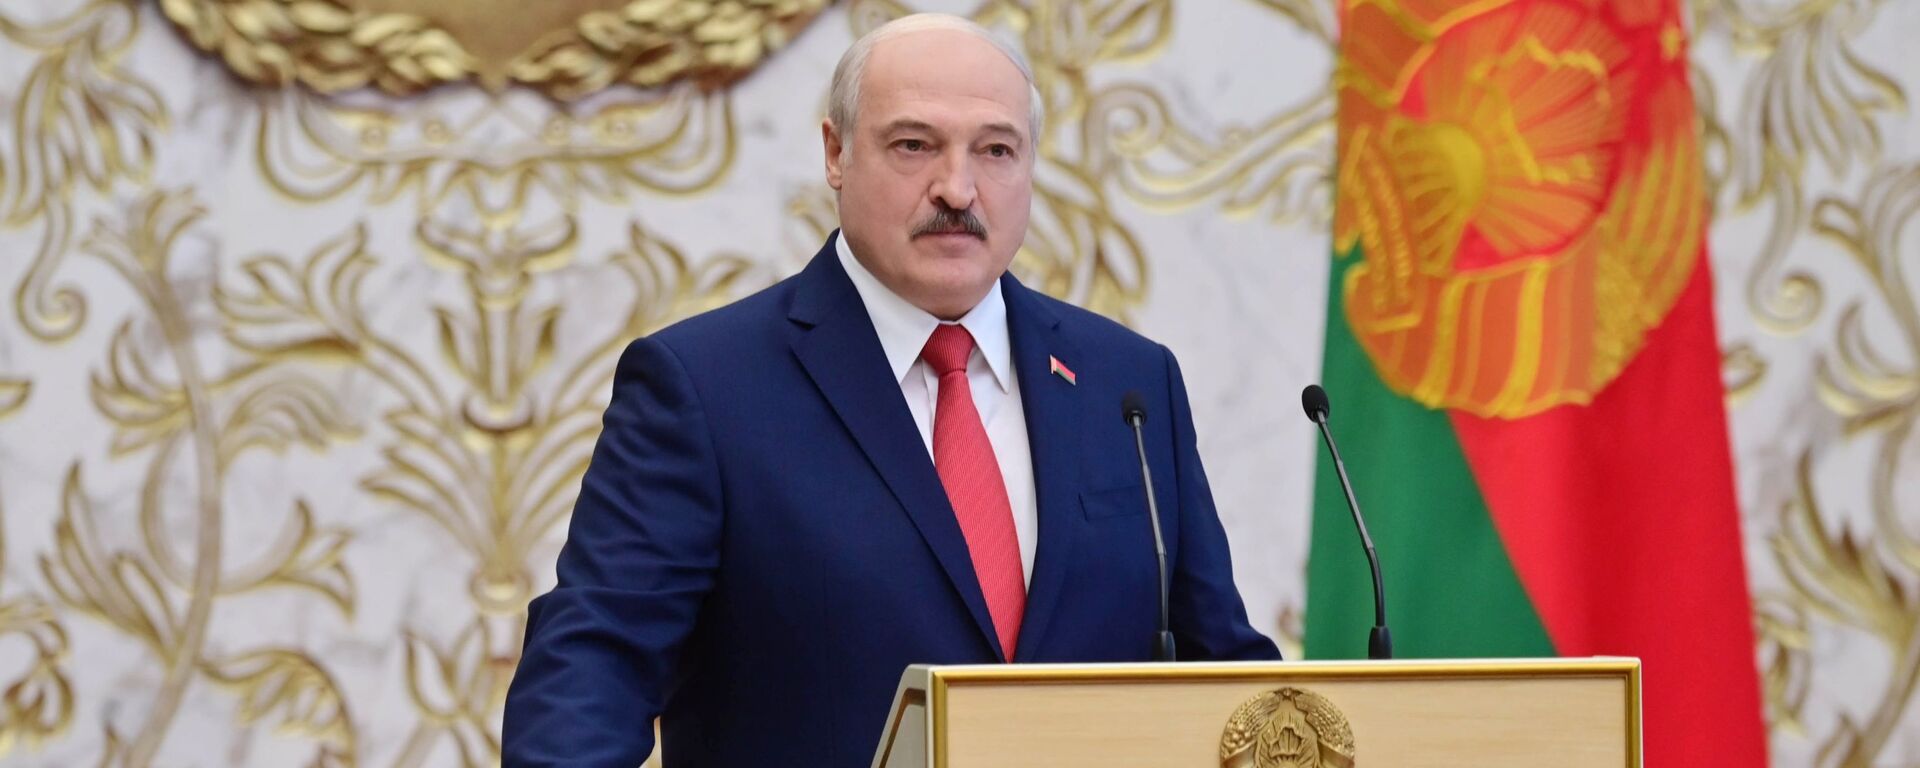 Вступление А. Лукашенко в должность президента Белоруссии - Sputnik Latvija, 1920, 12.02.2021